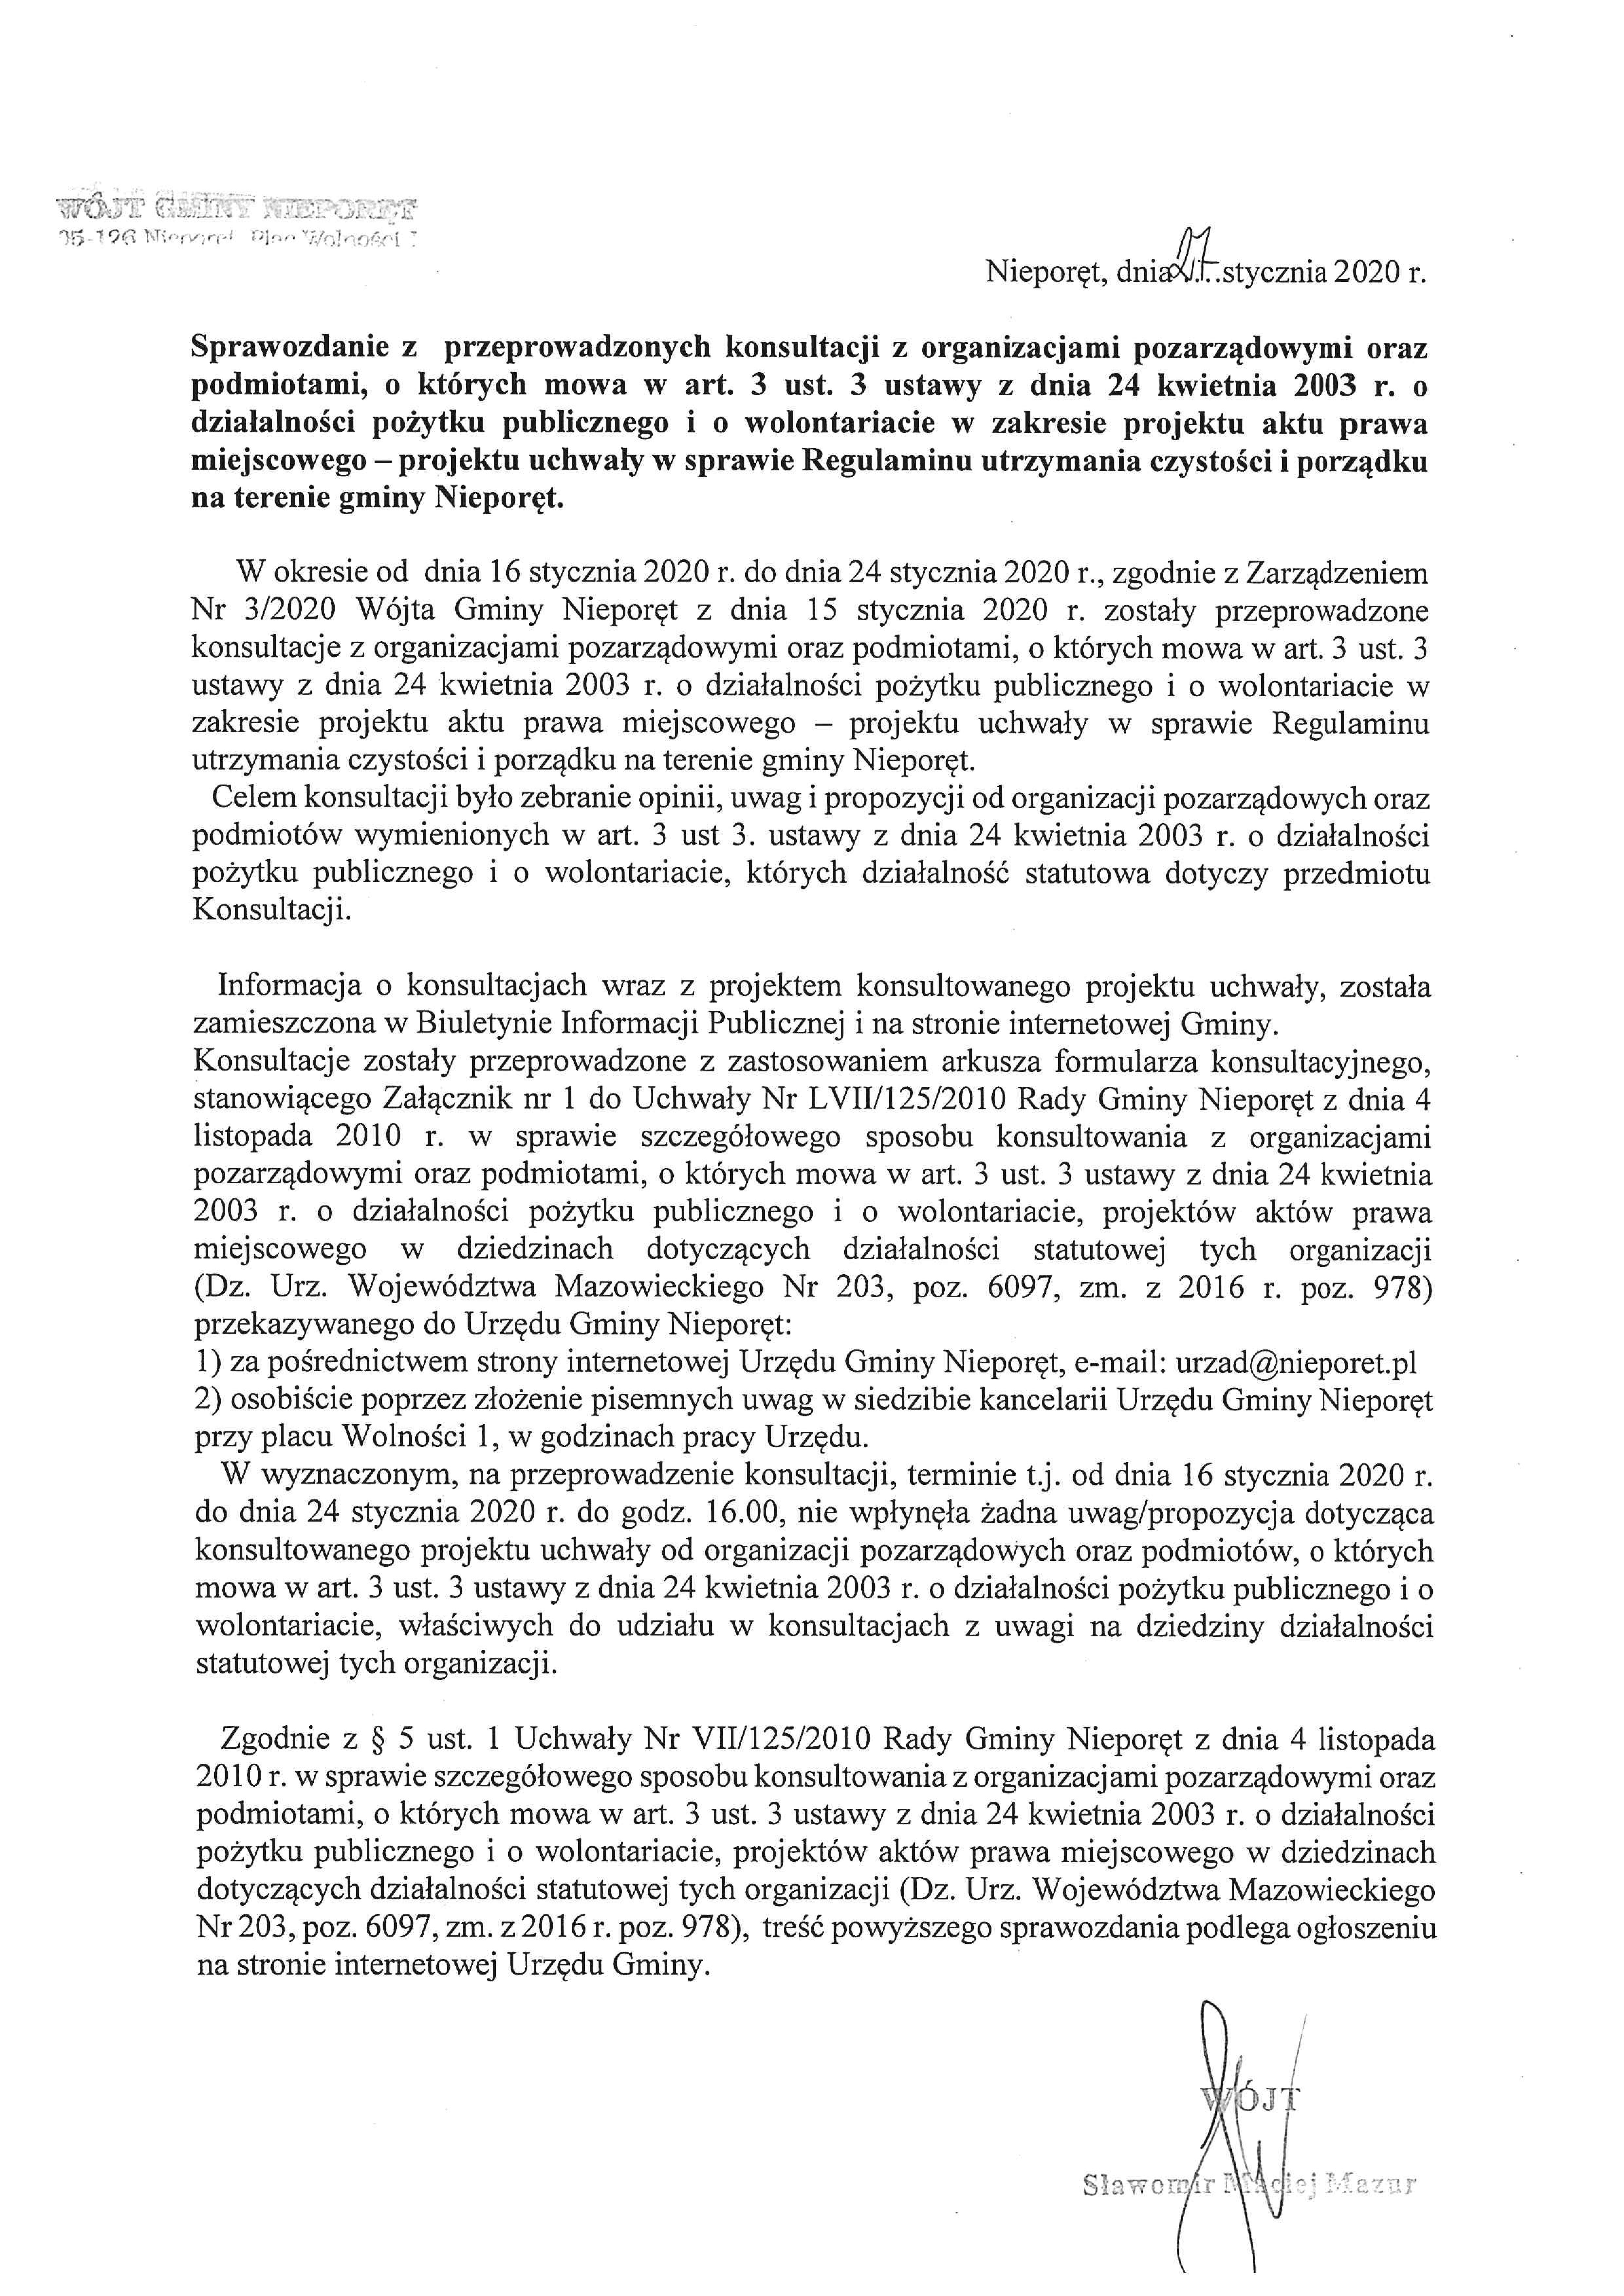 Art 3 Pkt 1 Ustawy Z Dnia 28 Listopada 2003 Sprawozdanie z przeprowadzonych konsultacji z organizacjami